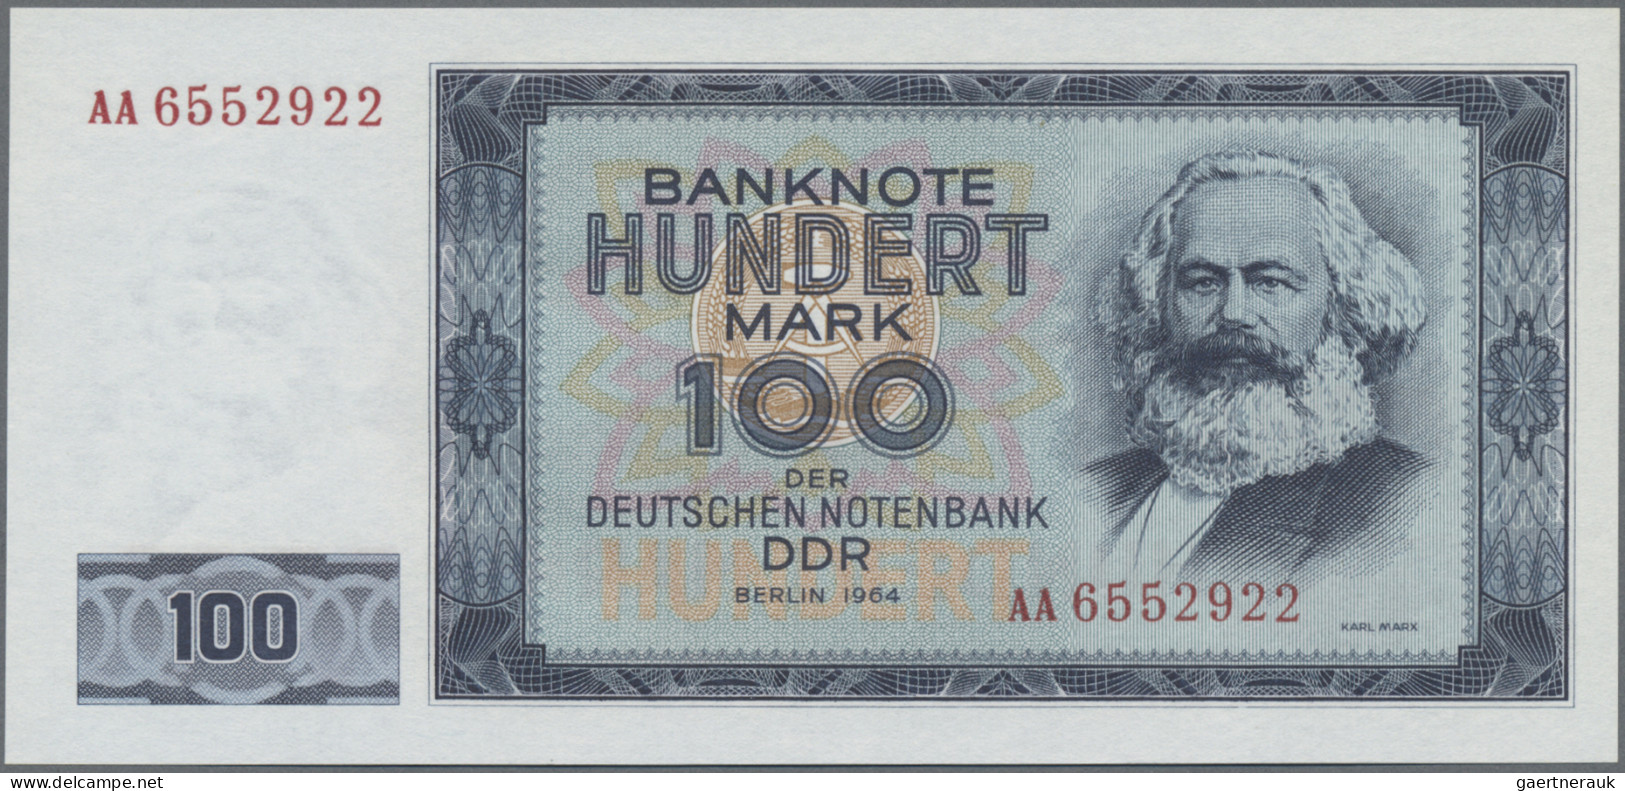 Deutschland - DDR: Deutsche Notenbank der DDR, 1964, Lot mit 6 Banknoten, dabei